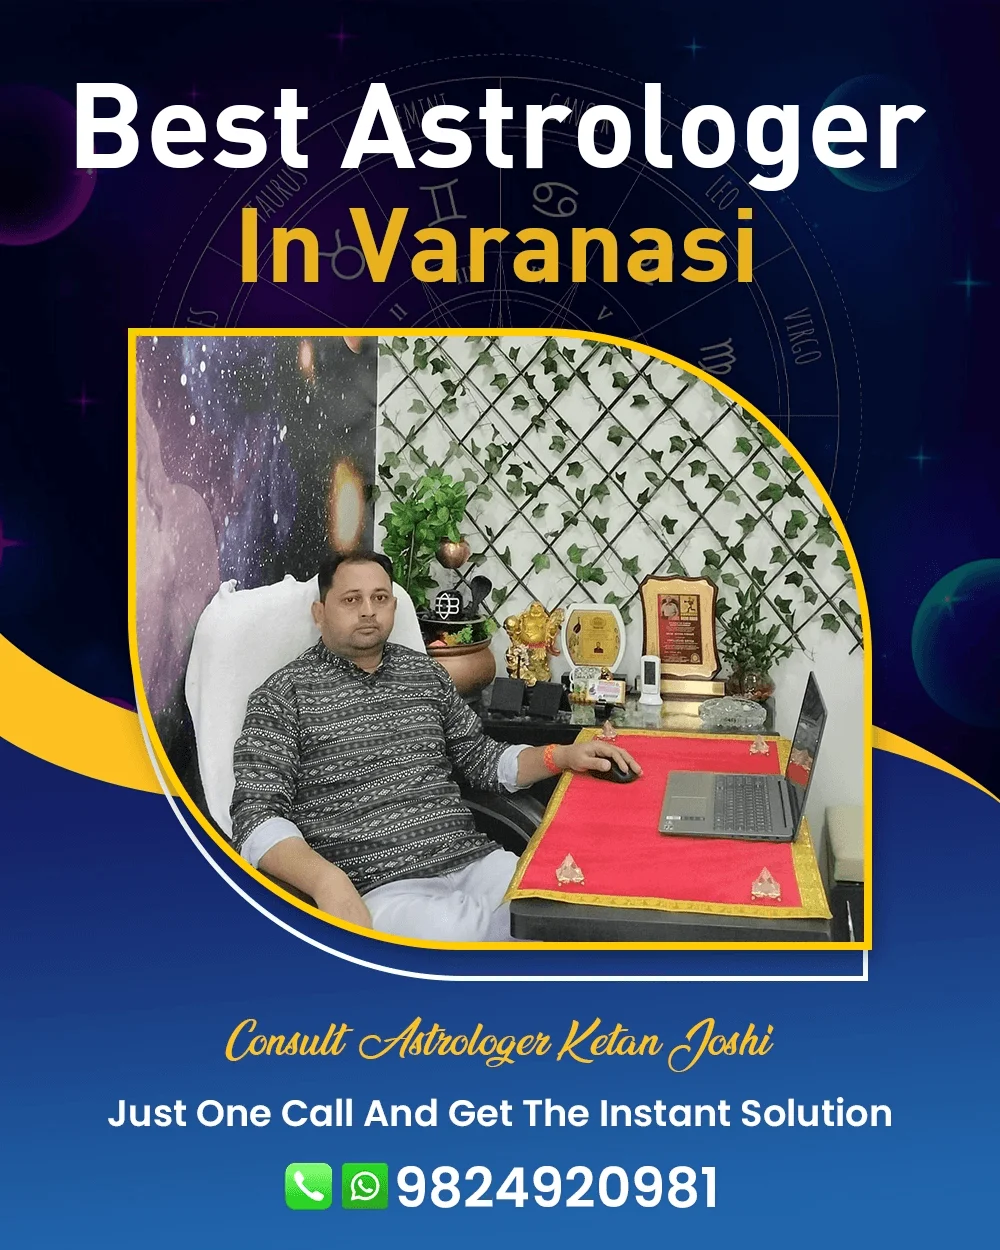 Best Astrologer In Varanasi